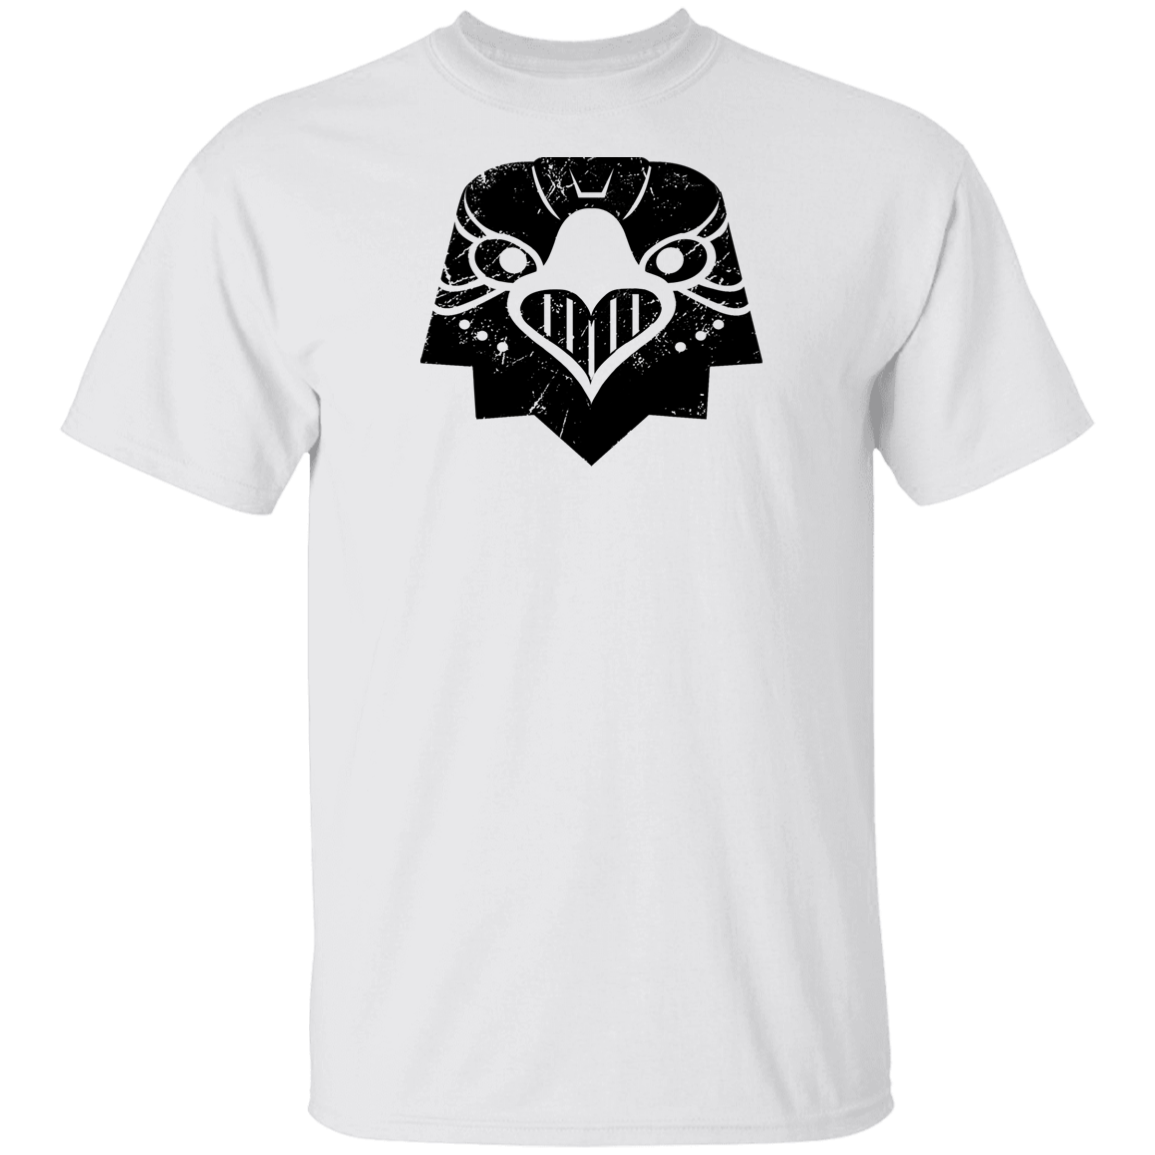 Black Distressed Emblem T-Shirt for Kids (Eagle/Eagle-Eye)